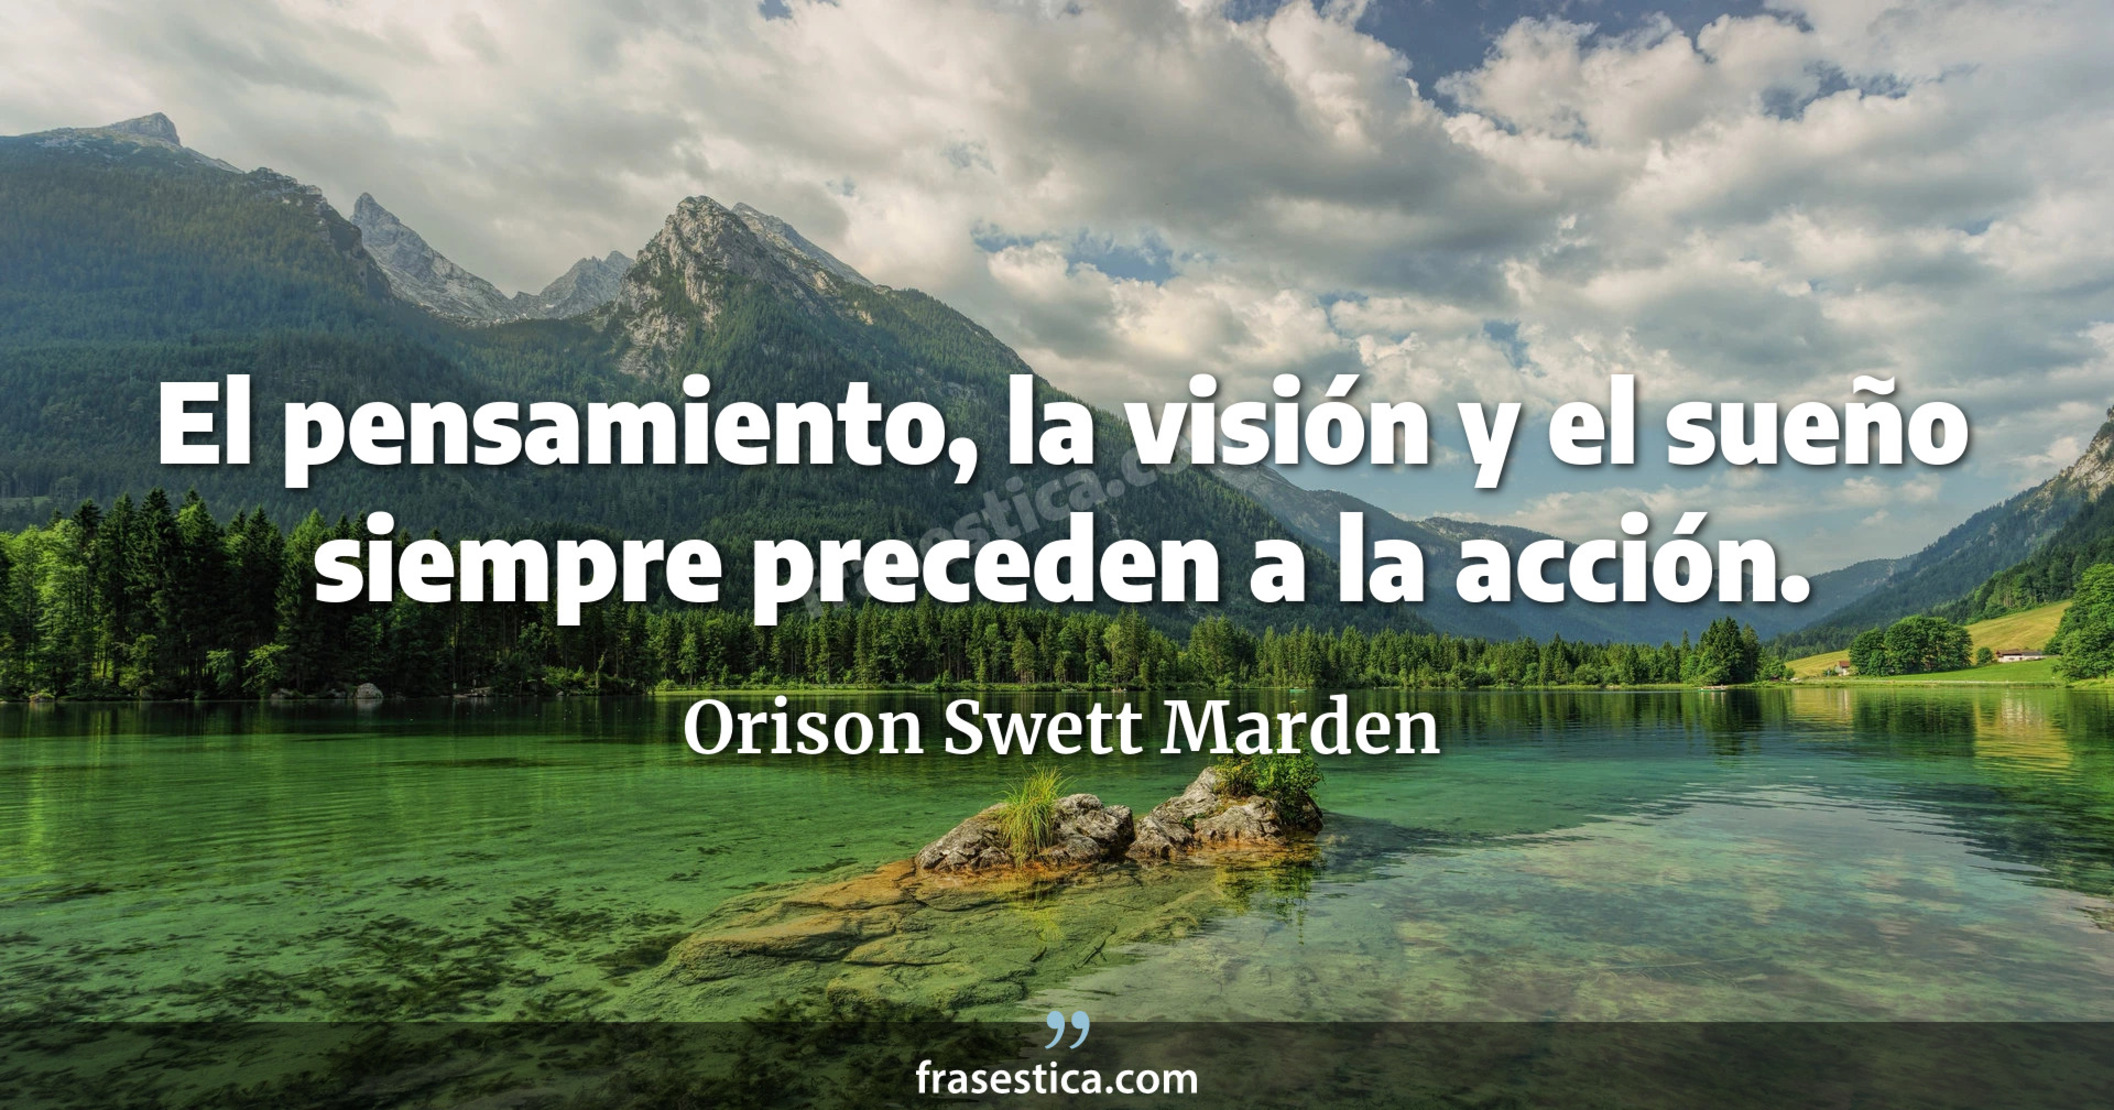 El pensamiento, la visión y el sueño siempre preceden a la acción. - Orison Swett Marden